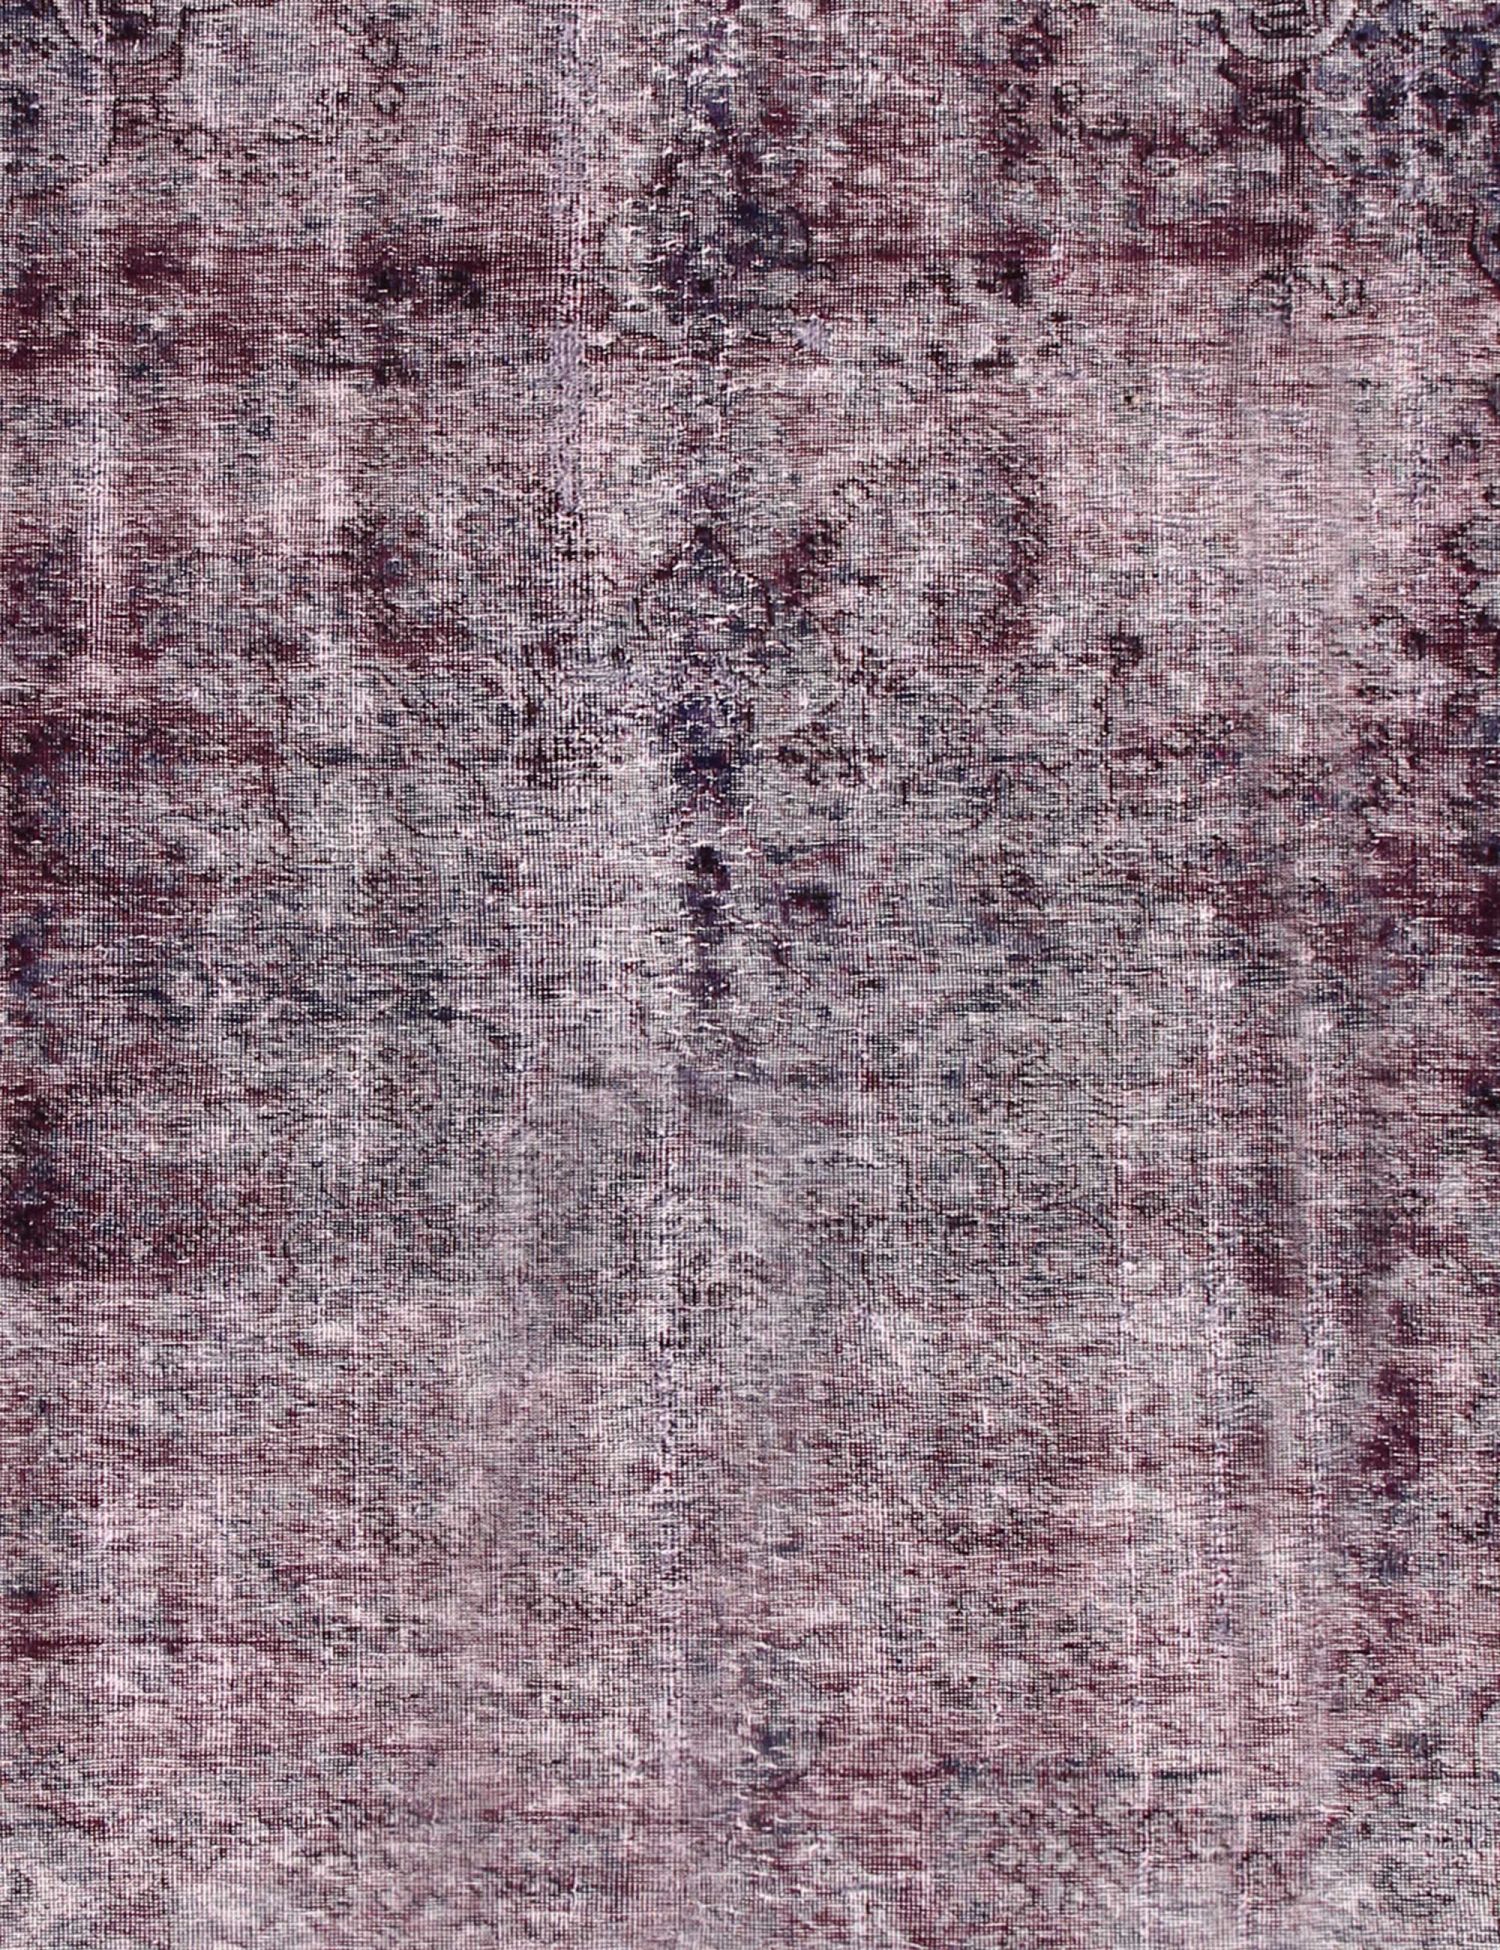 Persian Vintage Carpet  purple  <br/>264 x 180 cm